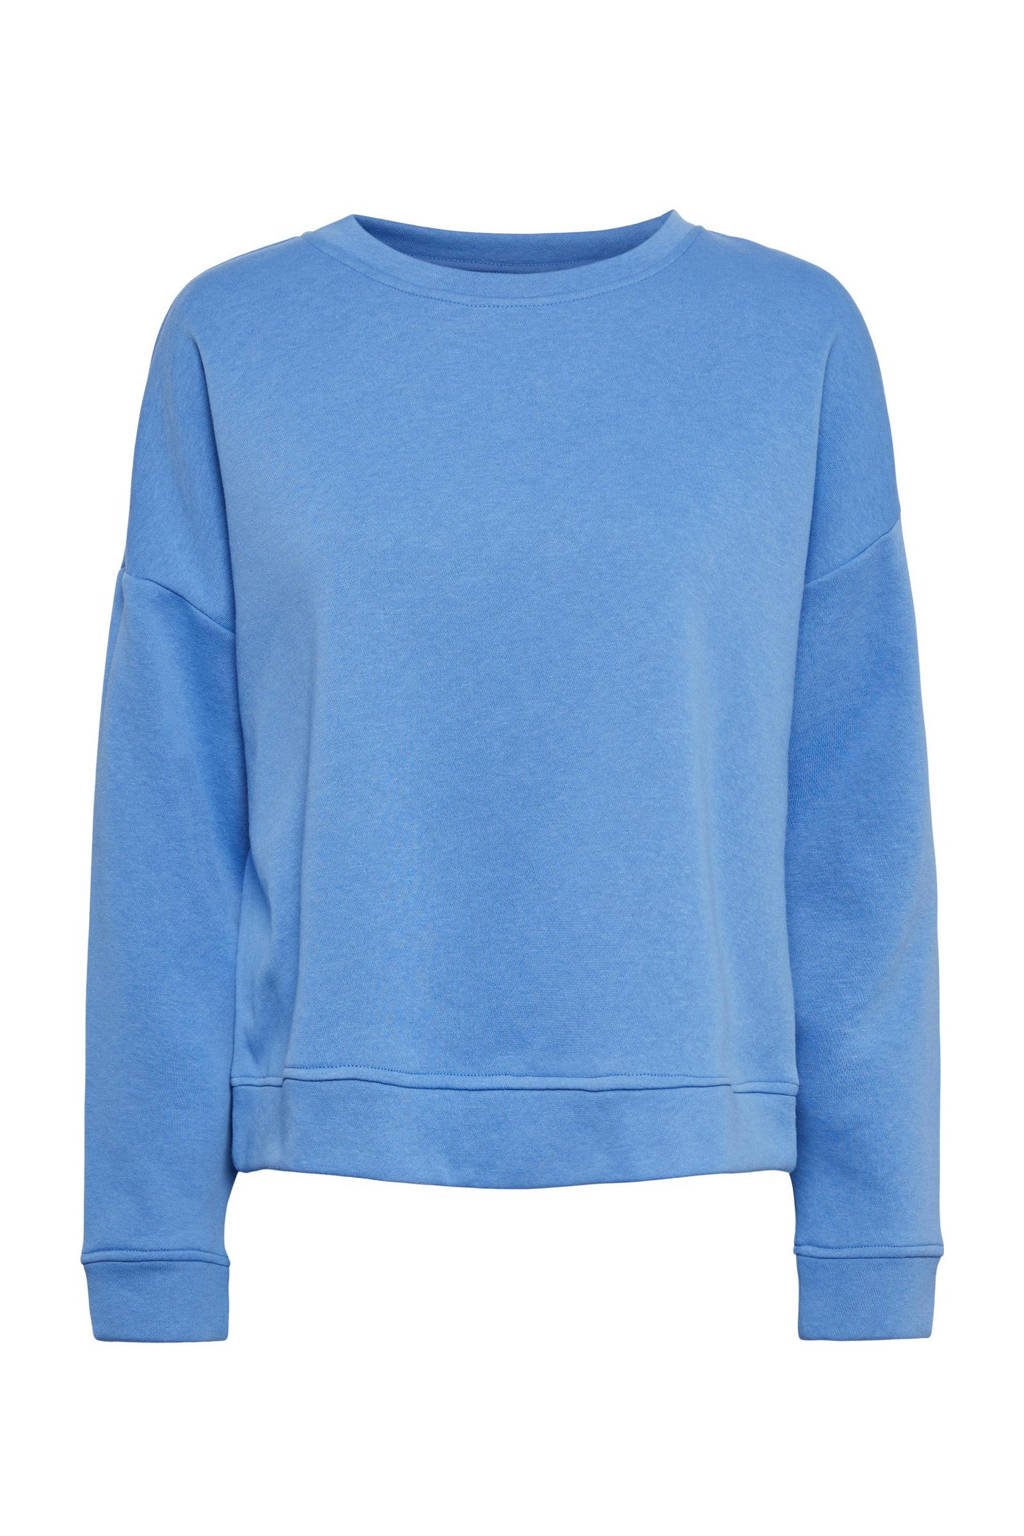 PIECES sweater Chilli lichtblauw